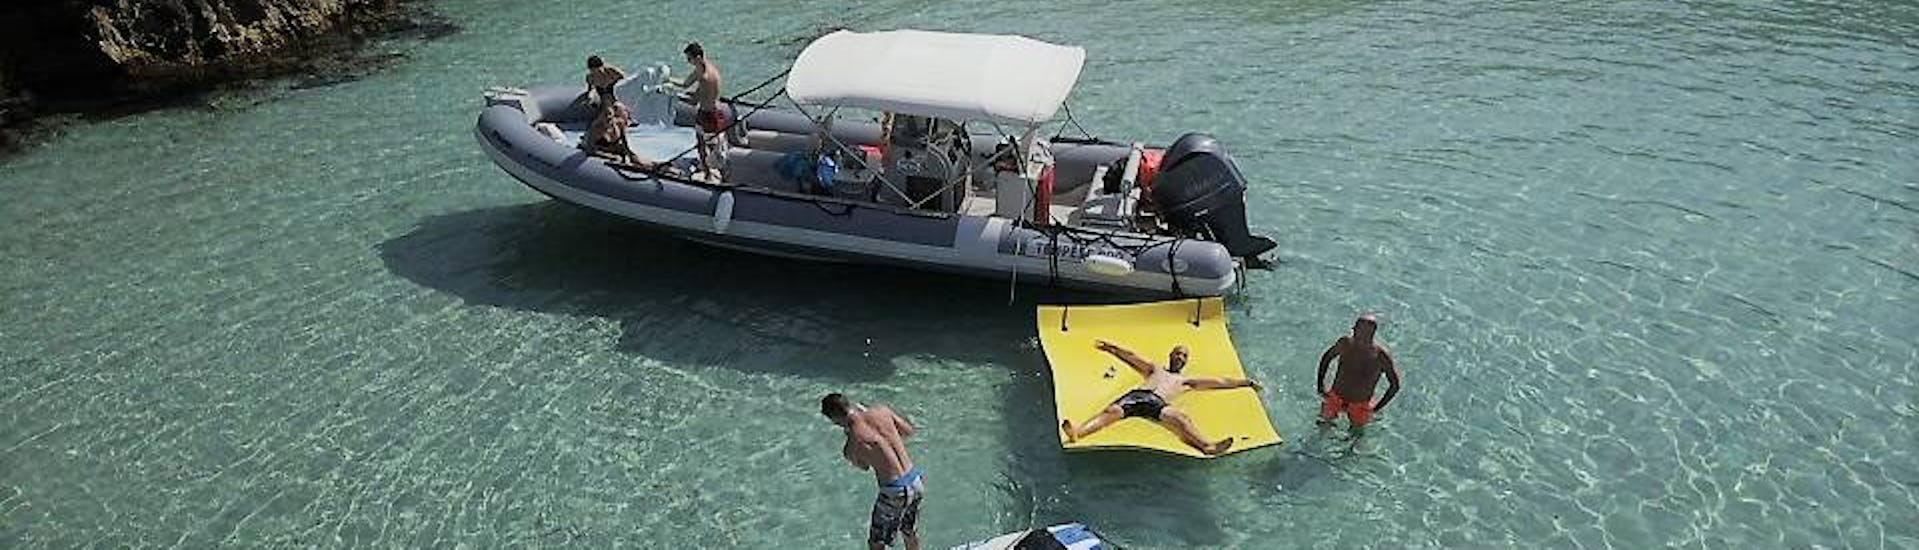 Bateau avec des personnes dans les eaux d'une crique faisant du standup paddling, du snorkeling et de la baignade lors d'une excursion en bateau à Ibiza avec snorkeling et boissons à volonté par Arenal Diving & Boat Trips Ibiza.